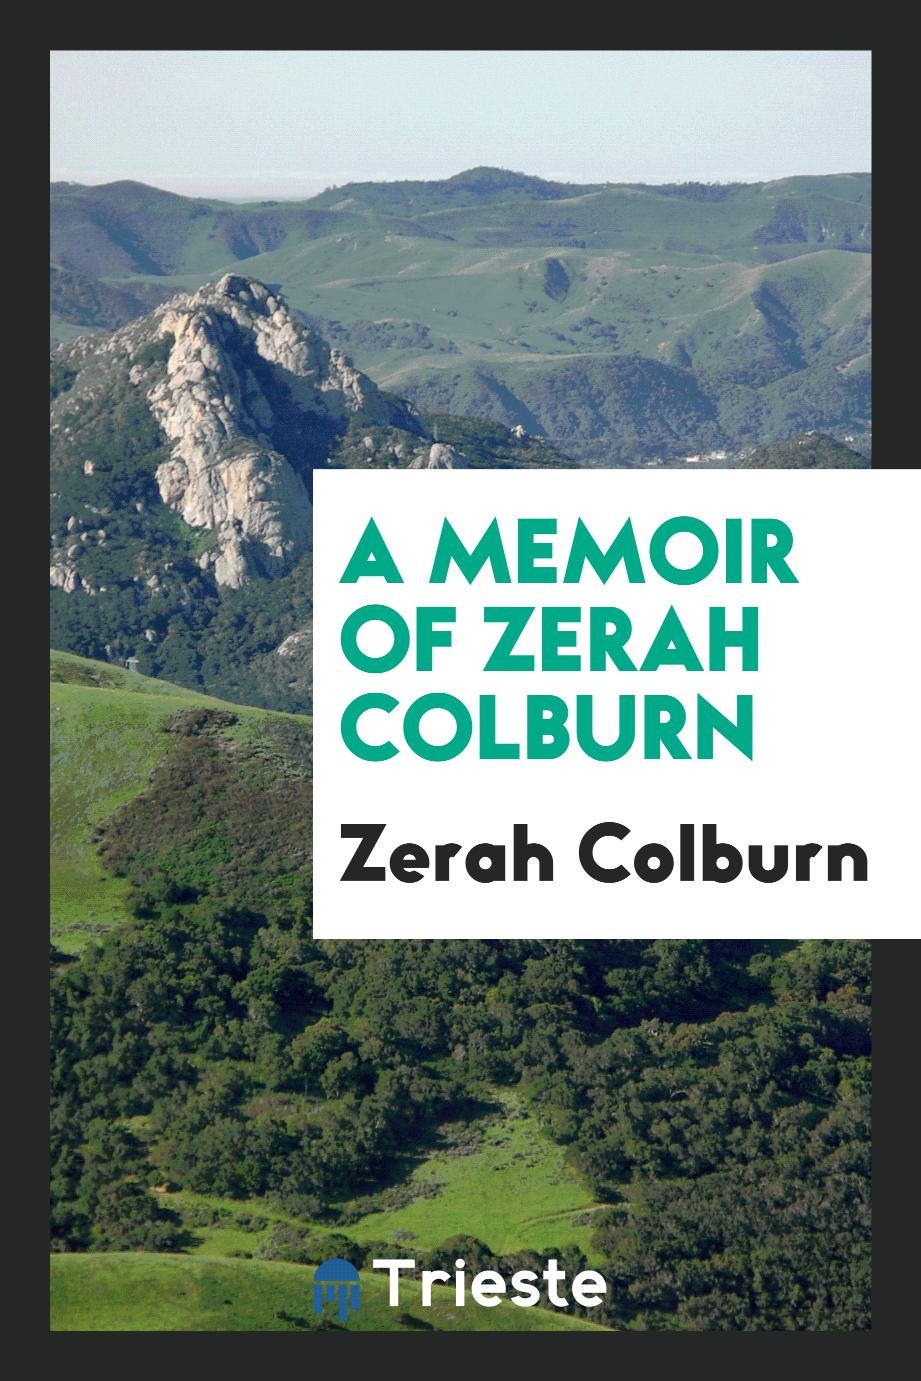 A memoir of Zerah Colburn